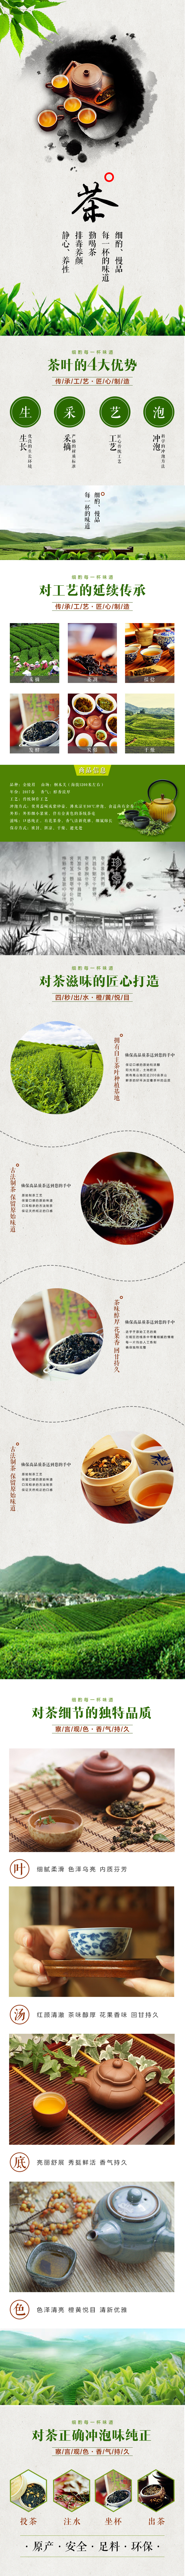 淘宝美工li瑶瑶食品保健中国风茶叶详情页作品